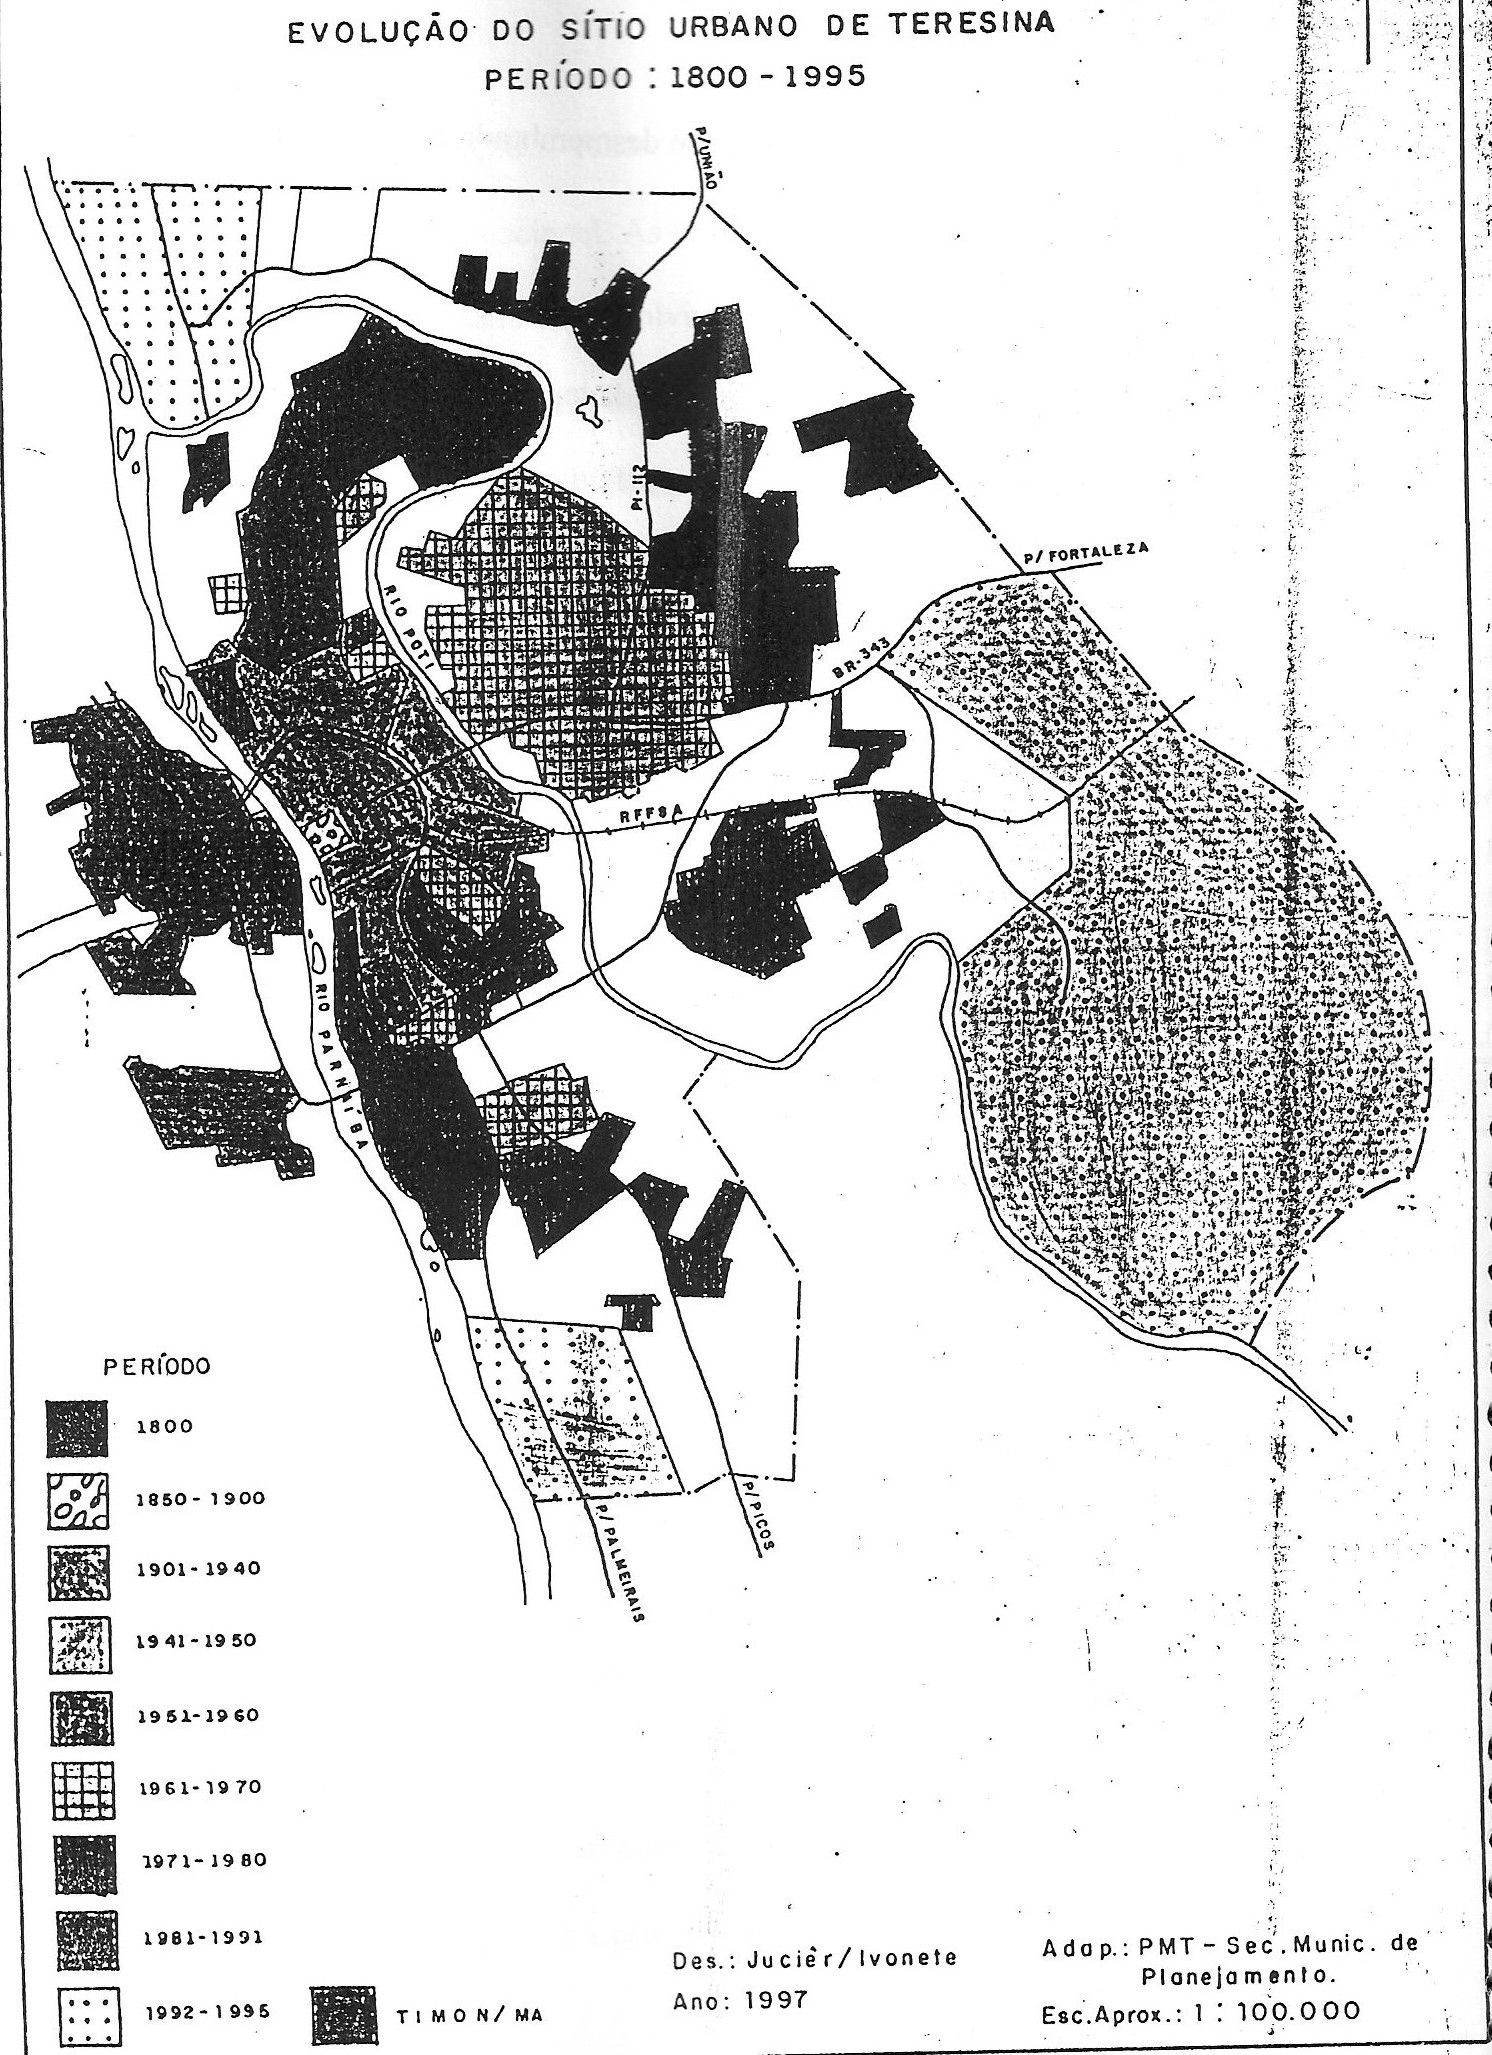 Figura 4 N Fonte: Façanha, 1997, p.88 Neste mapa da Figura 4, mostra que o perímetro urbano de Teresina se encontra ampliado.